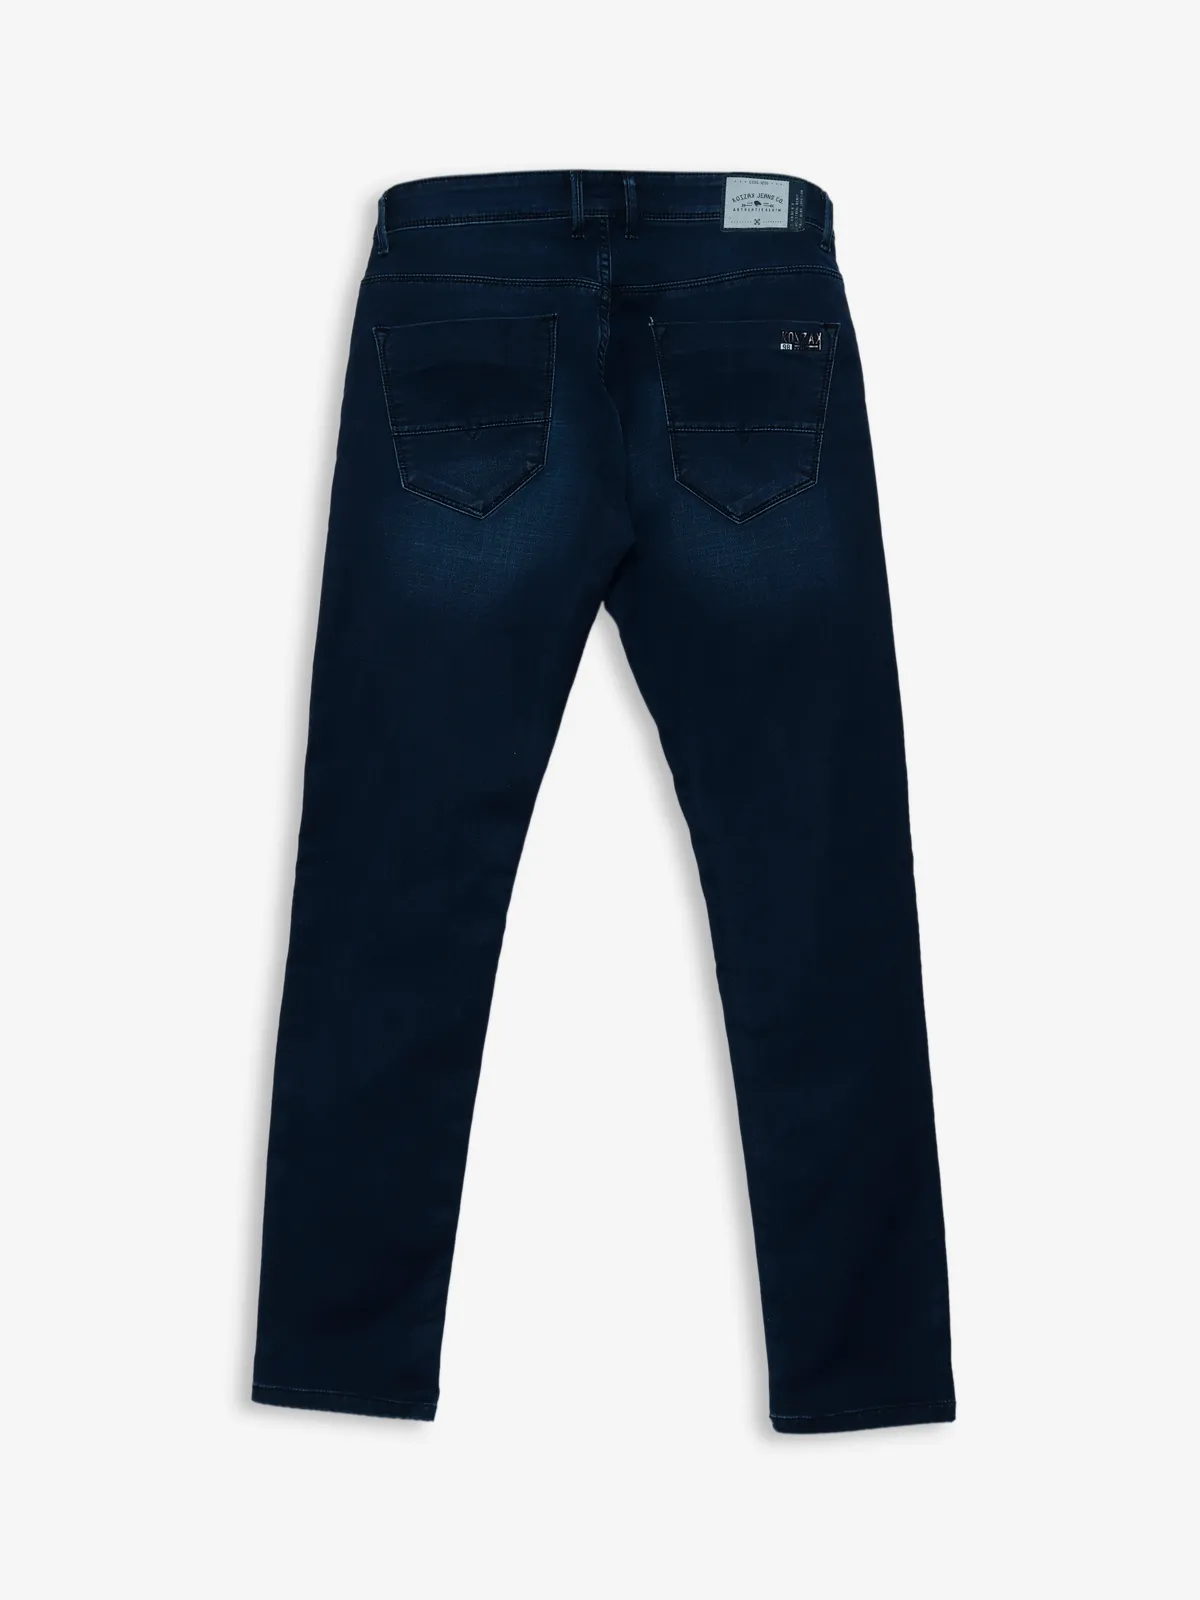 Kozzak super skinny fit dark blue washed jeans